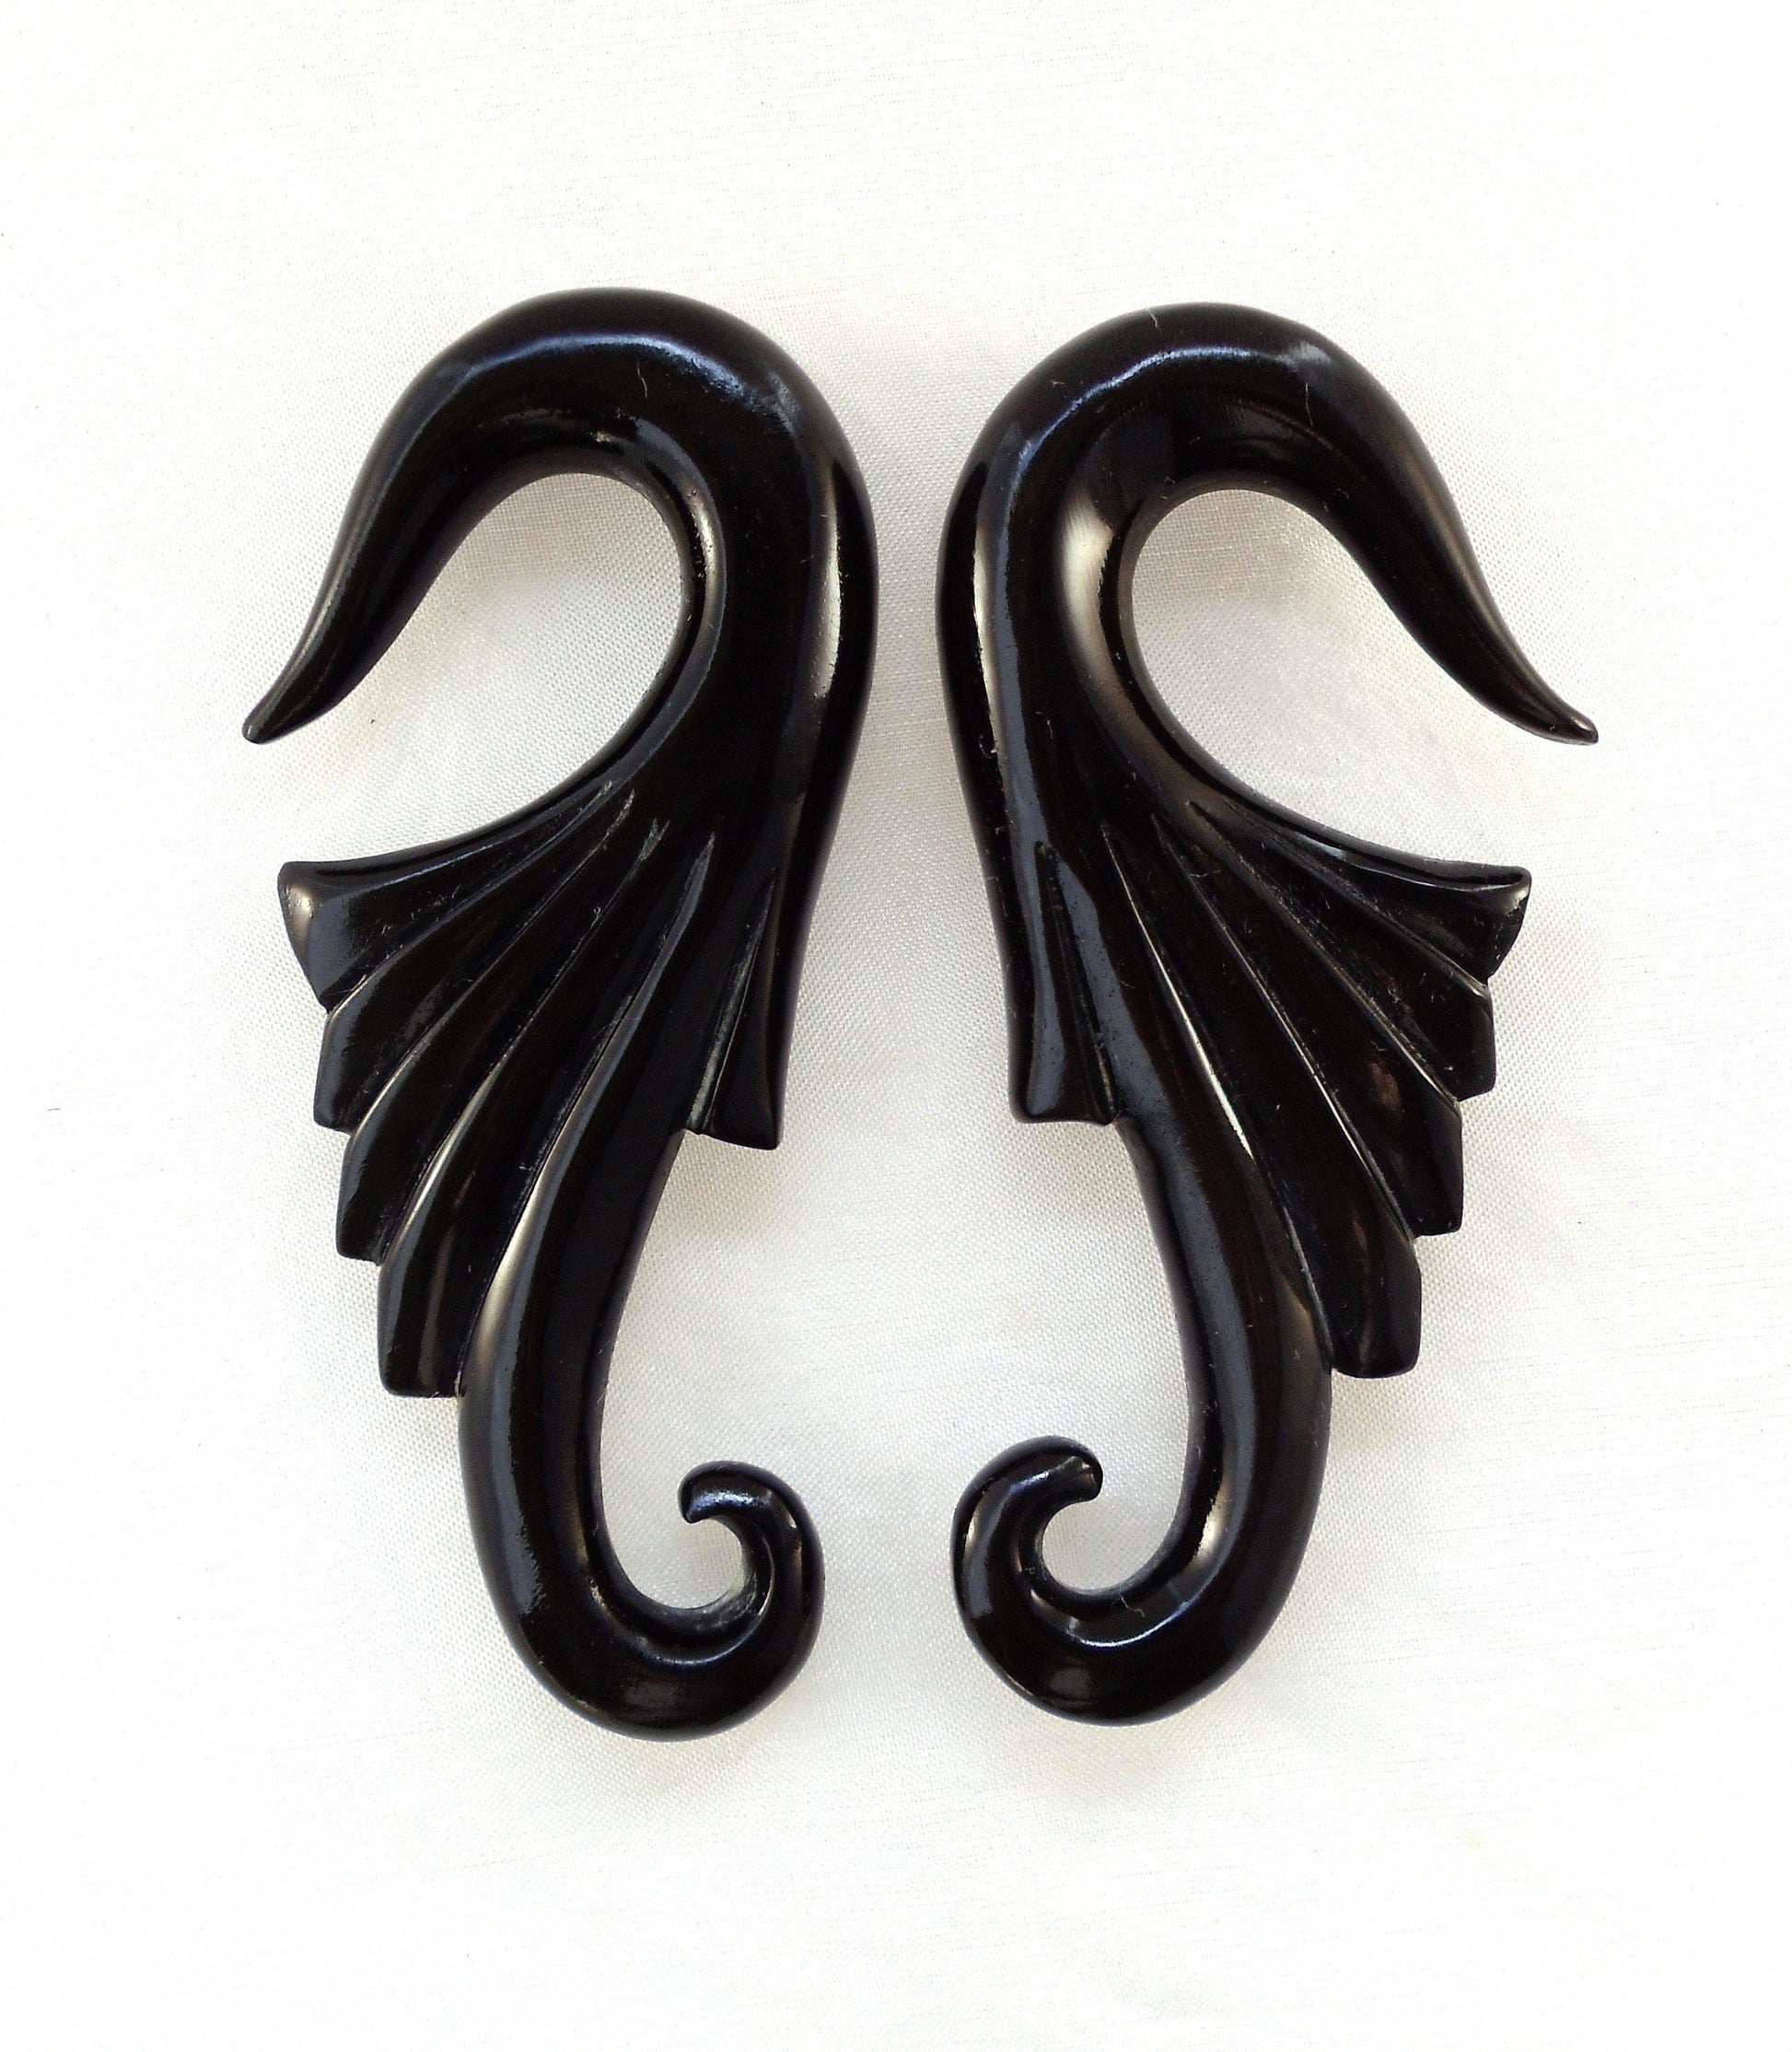 Gauges :|: Neuvo Wings, 00 gauge Horn Gauged Earrings. 1 1/8 inch W X 2 3/4 inch L. | Gauges